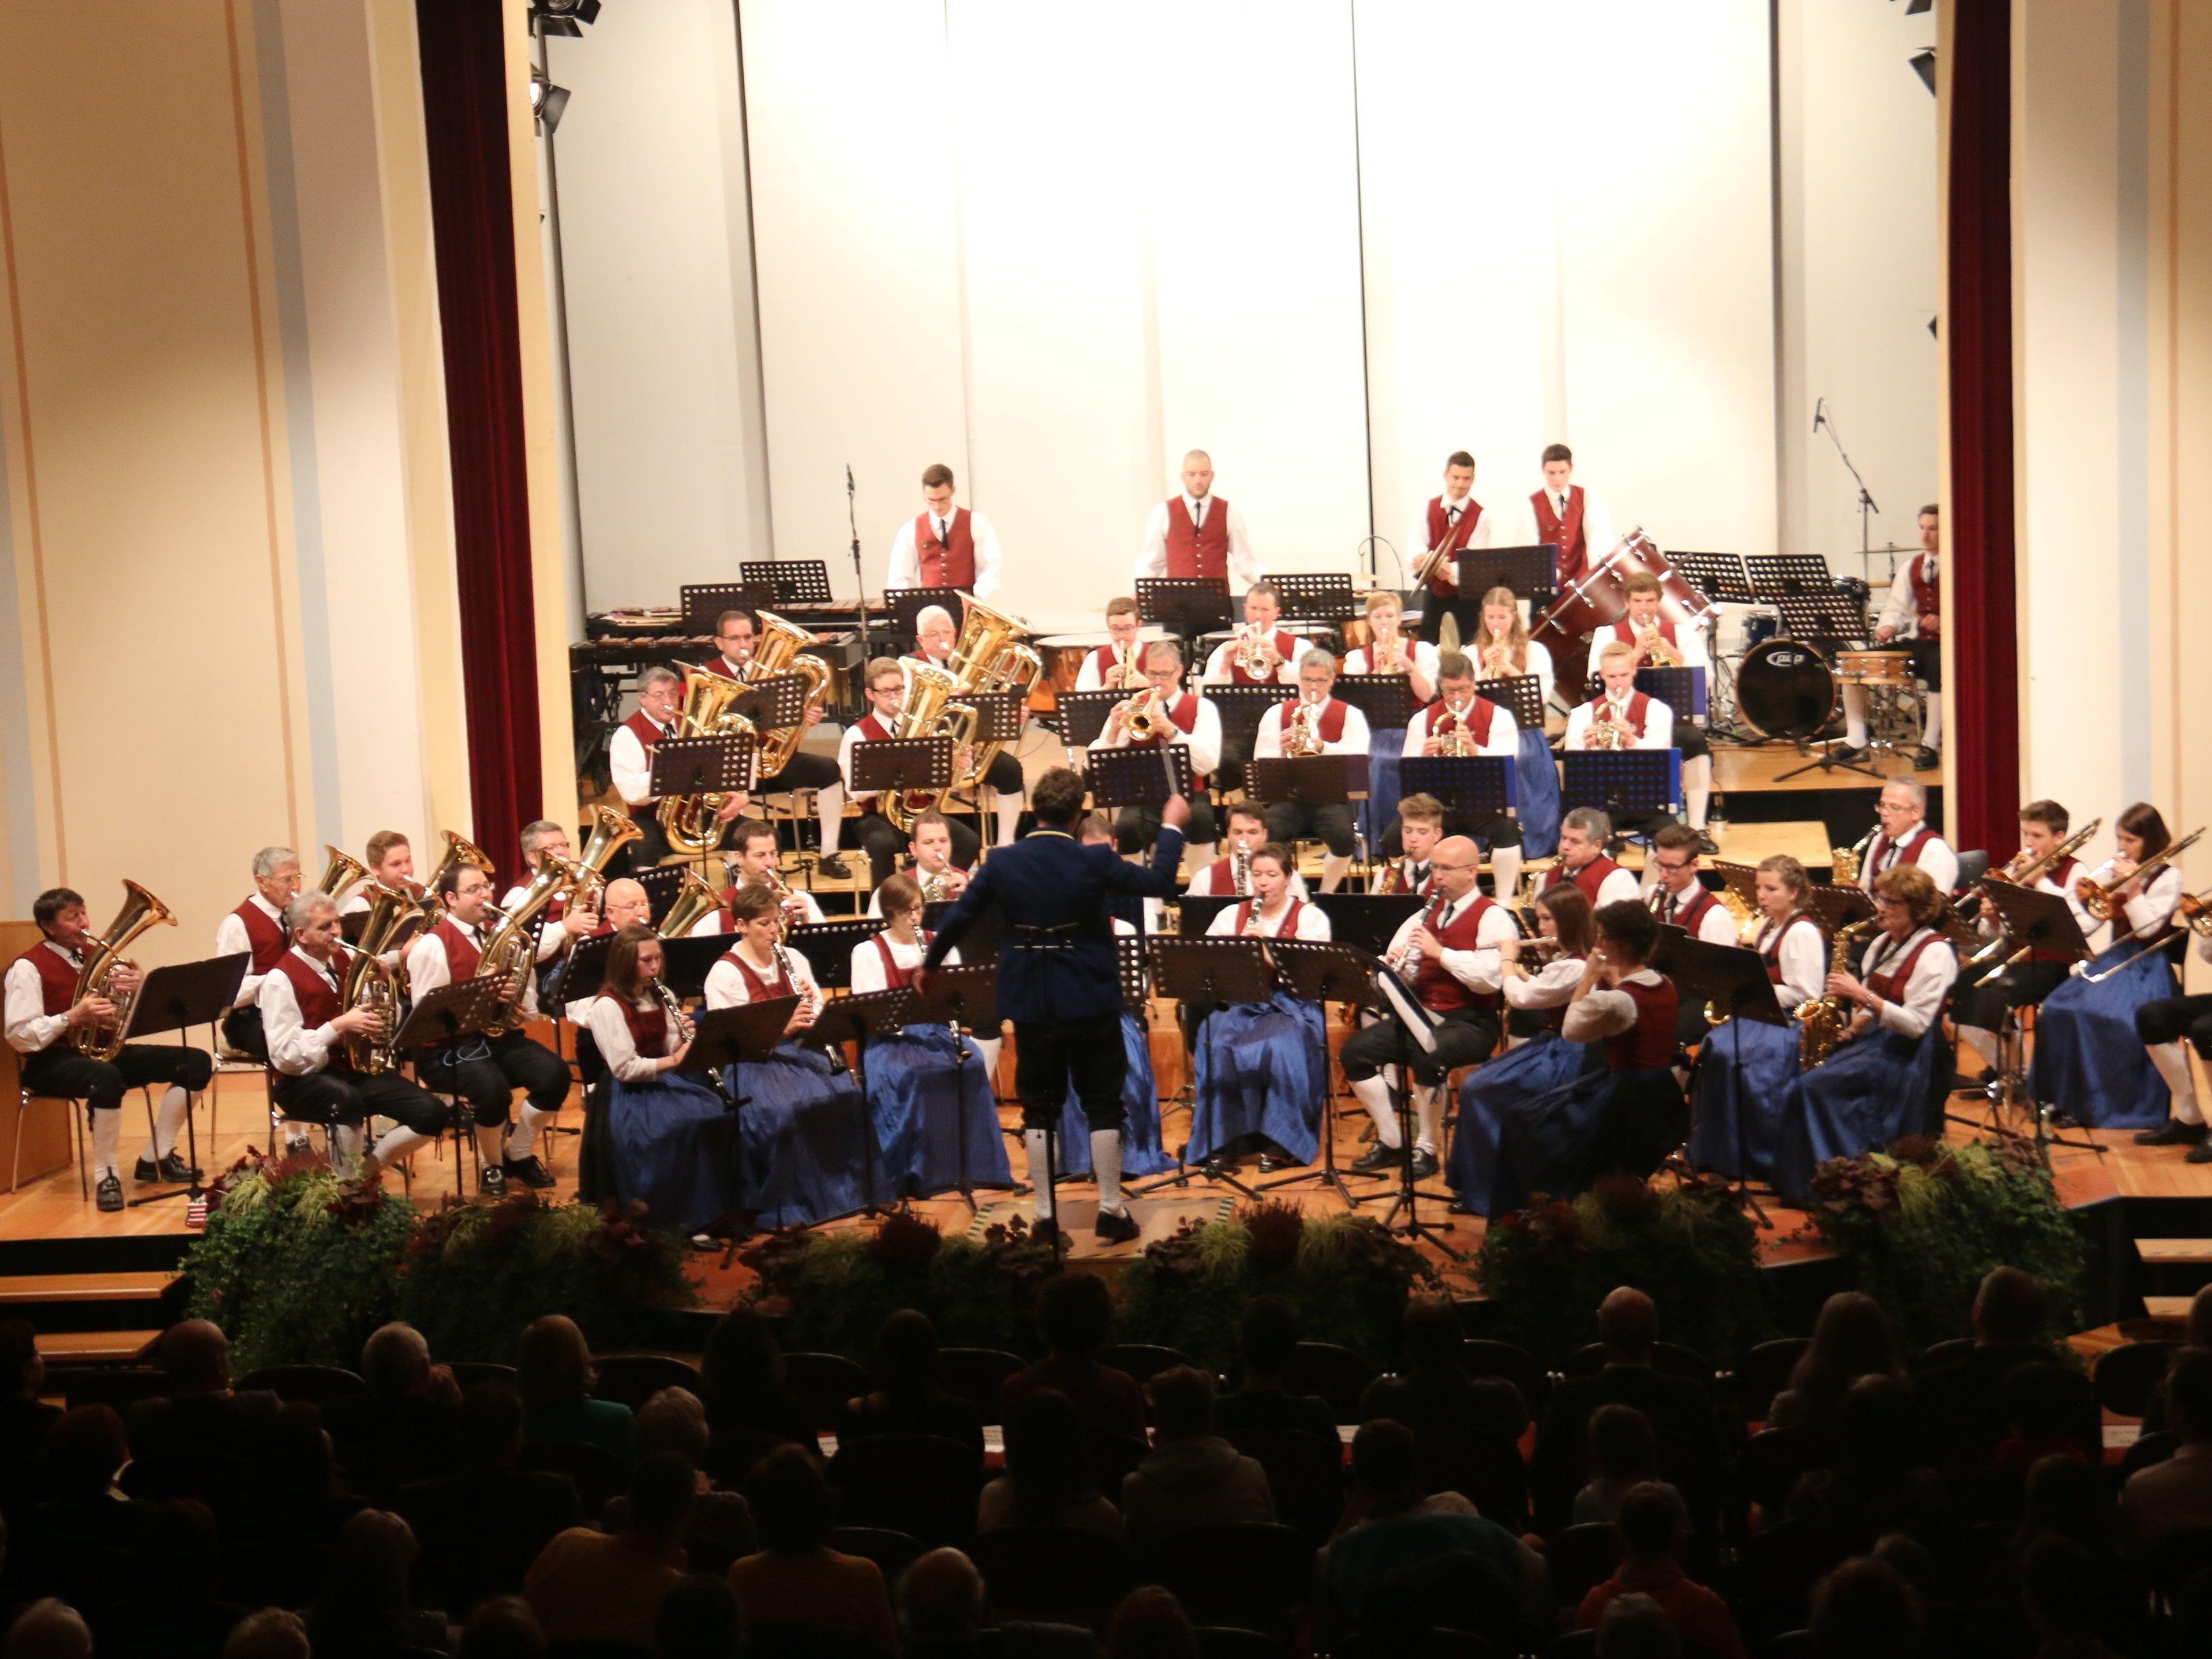 Der Musikverein Gisingen präsentierte „Das Konzert“ im Saal des Landeskonservatoriums.